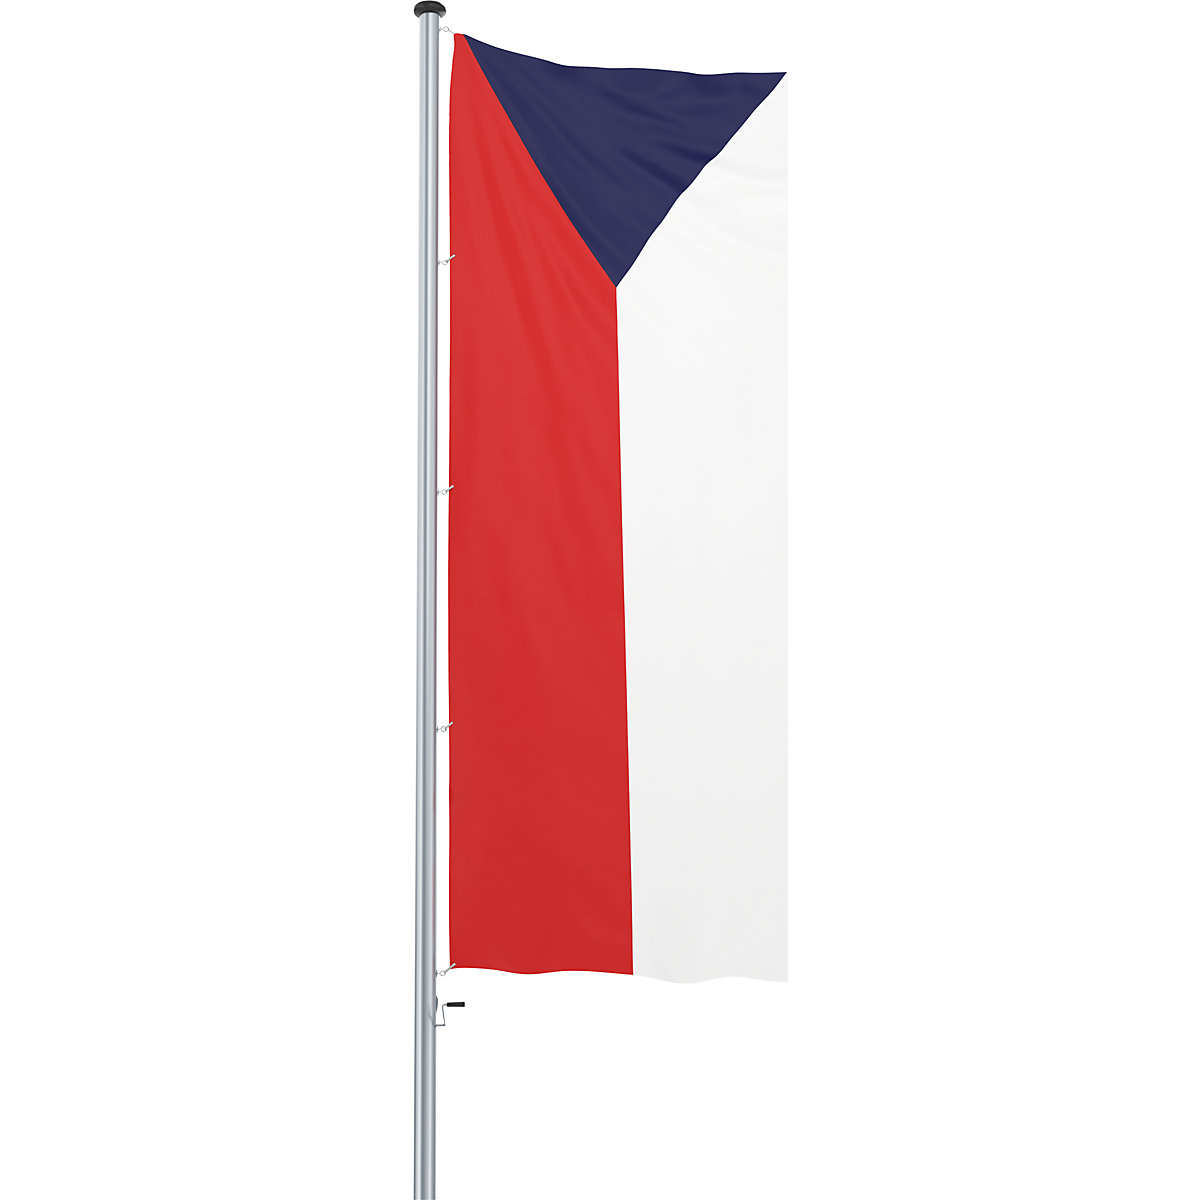 Mannus – Bandera para izar/bandera del país (Imagen del producto 58)